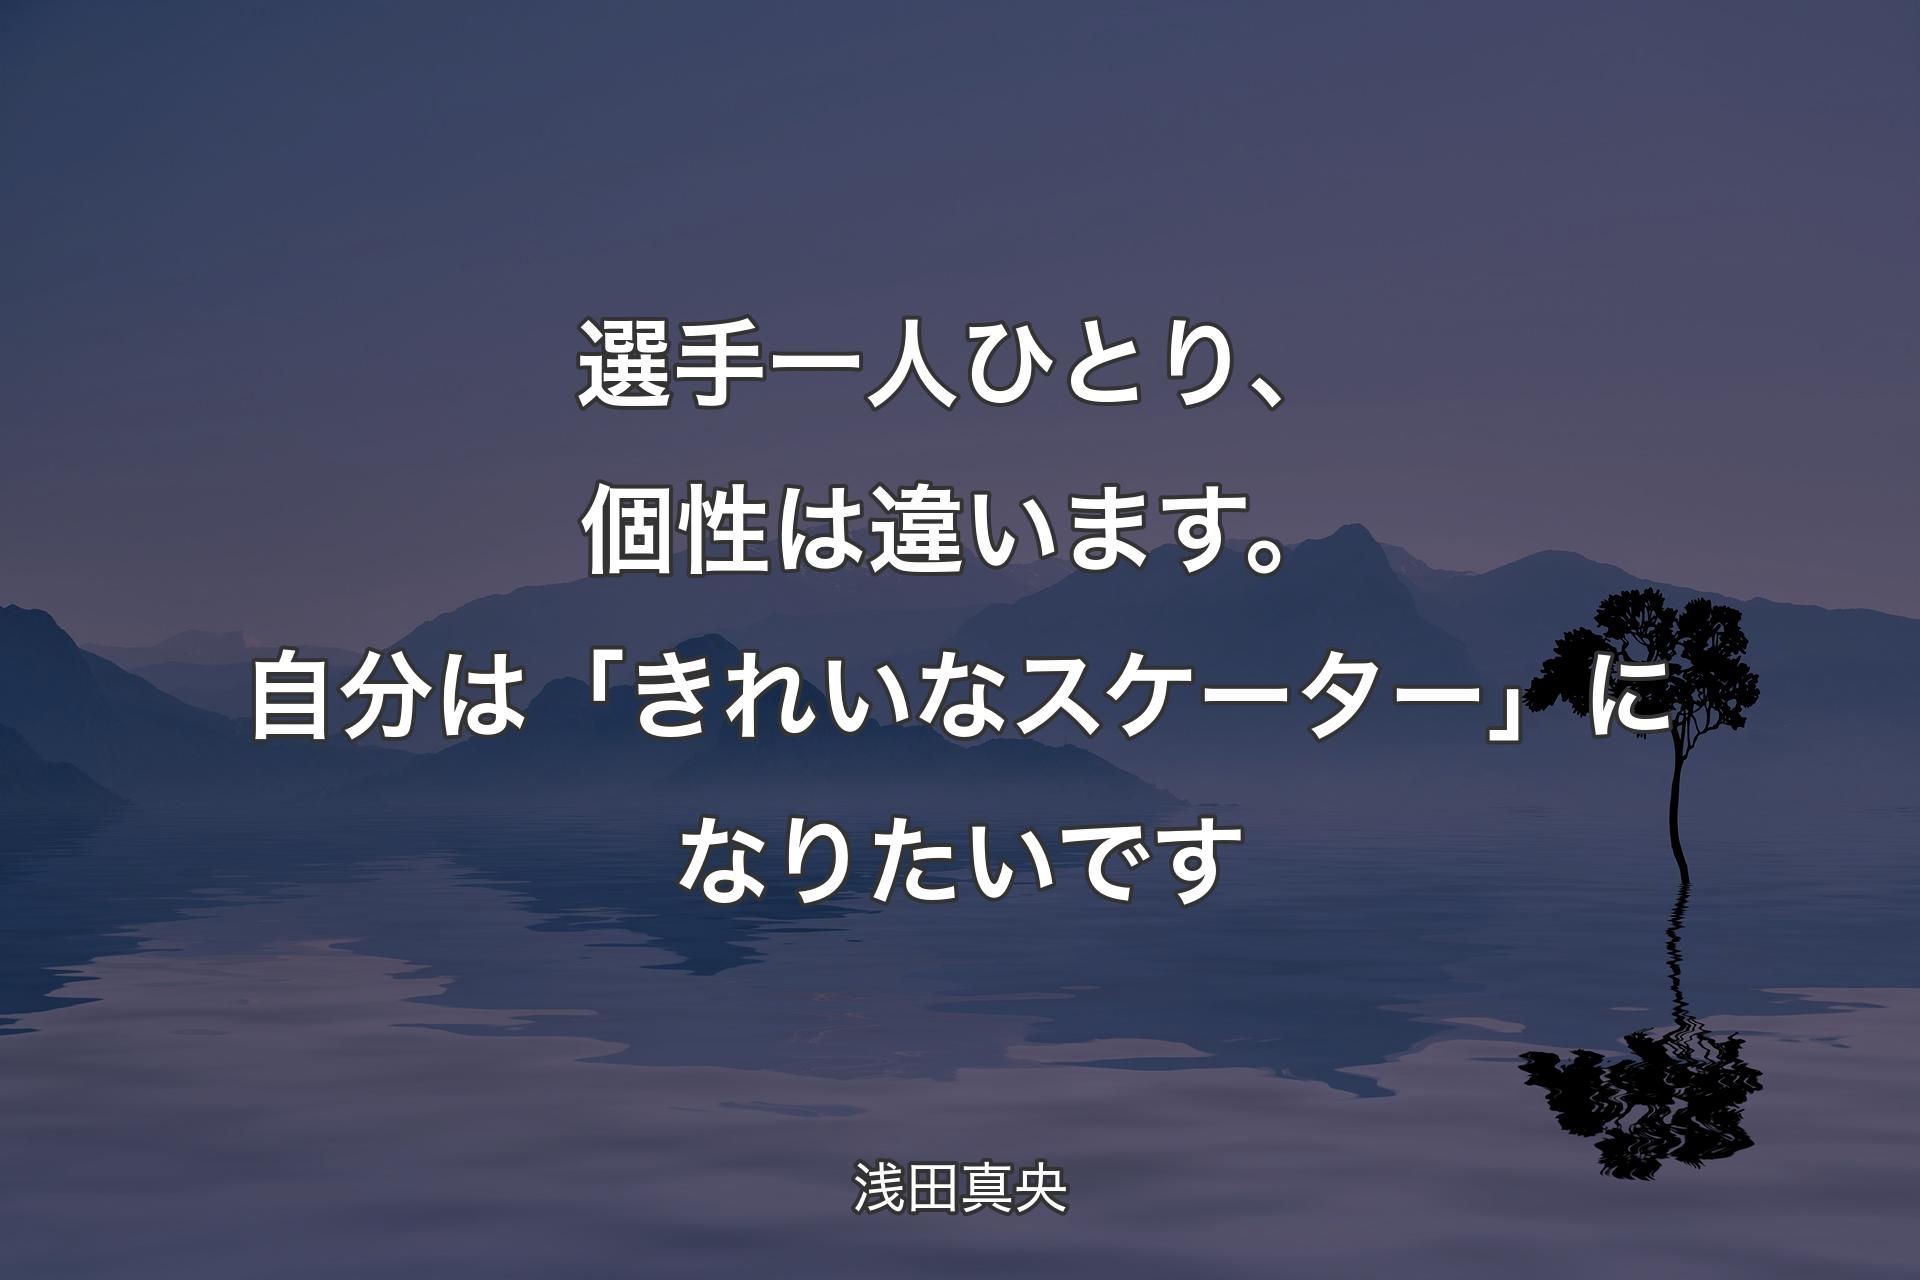 【背景4】選手一人ひとり、個性は違います。自分は「きれいなスケーター」になりたいです - 浅田真央